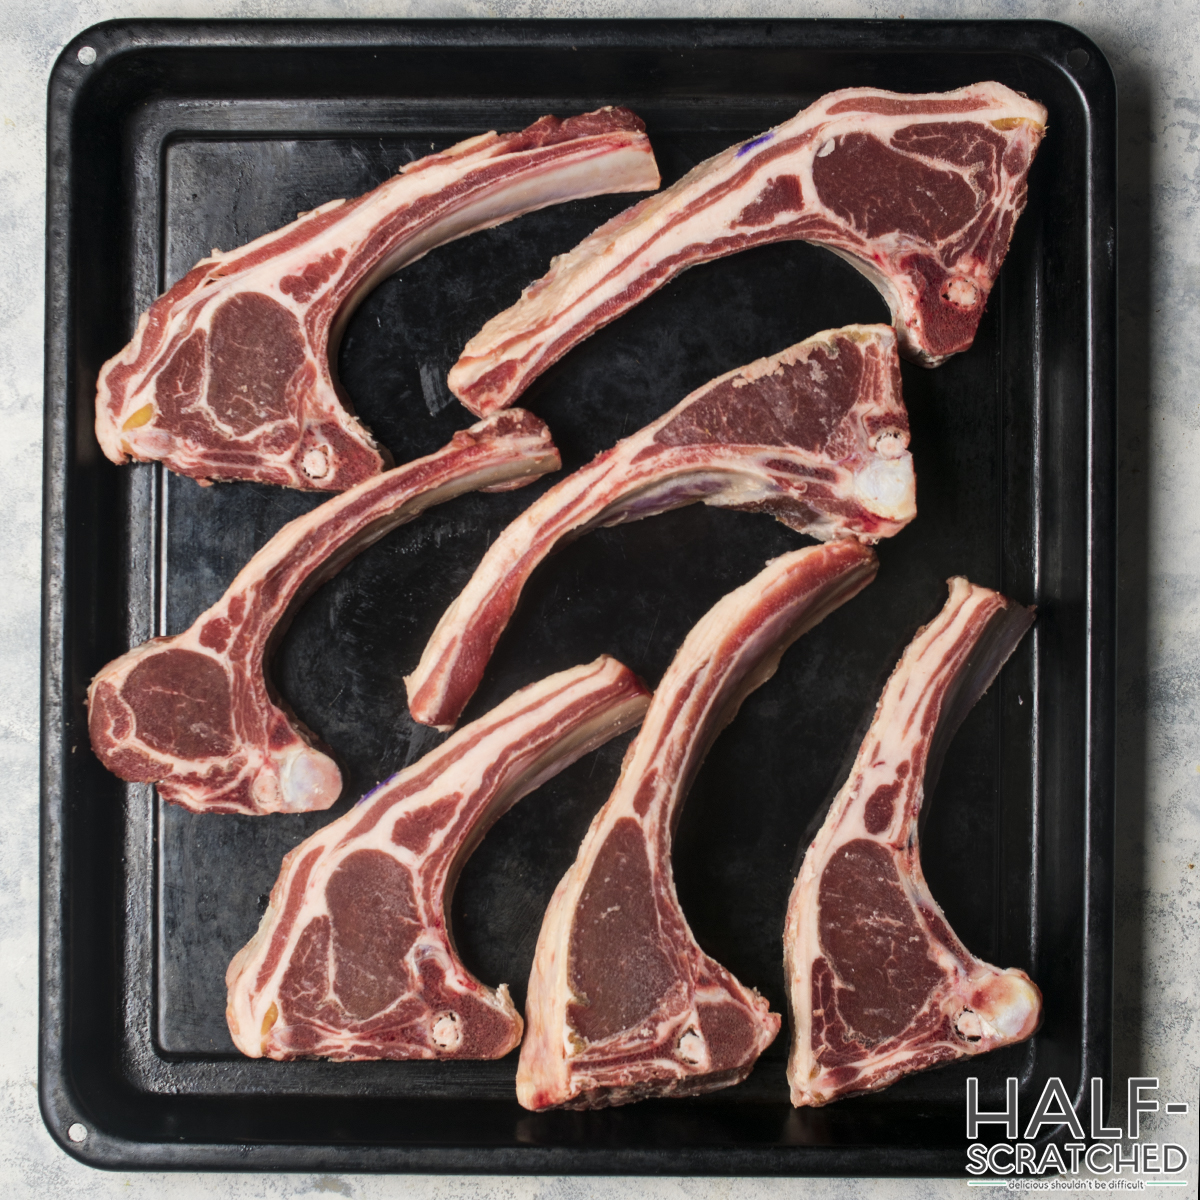 Raw lamb chops arranged on a black tray